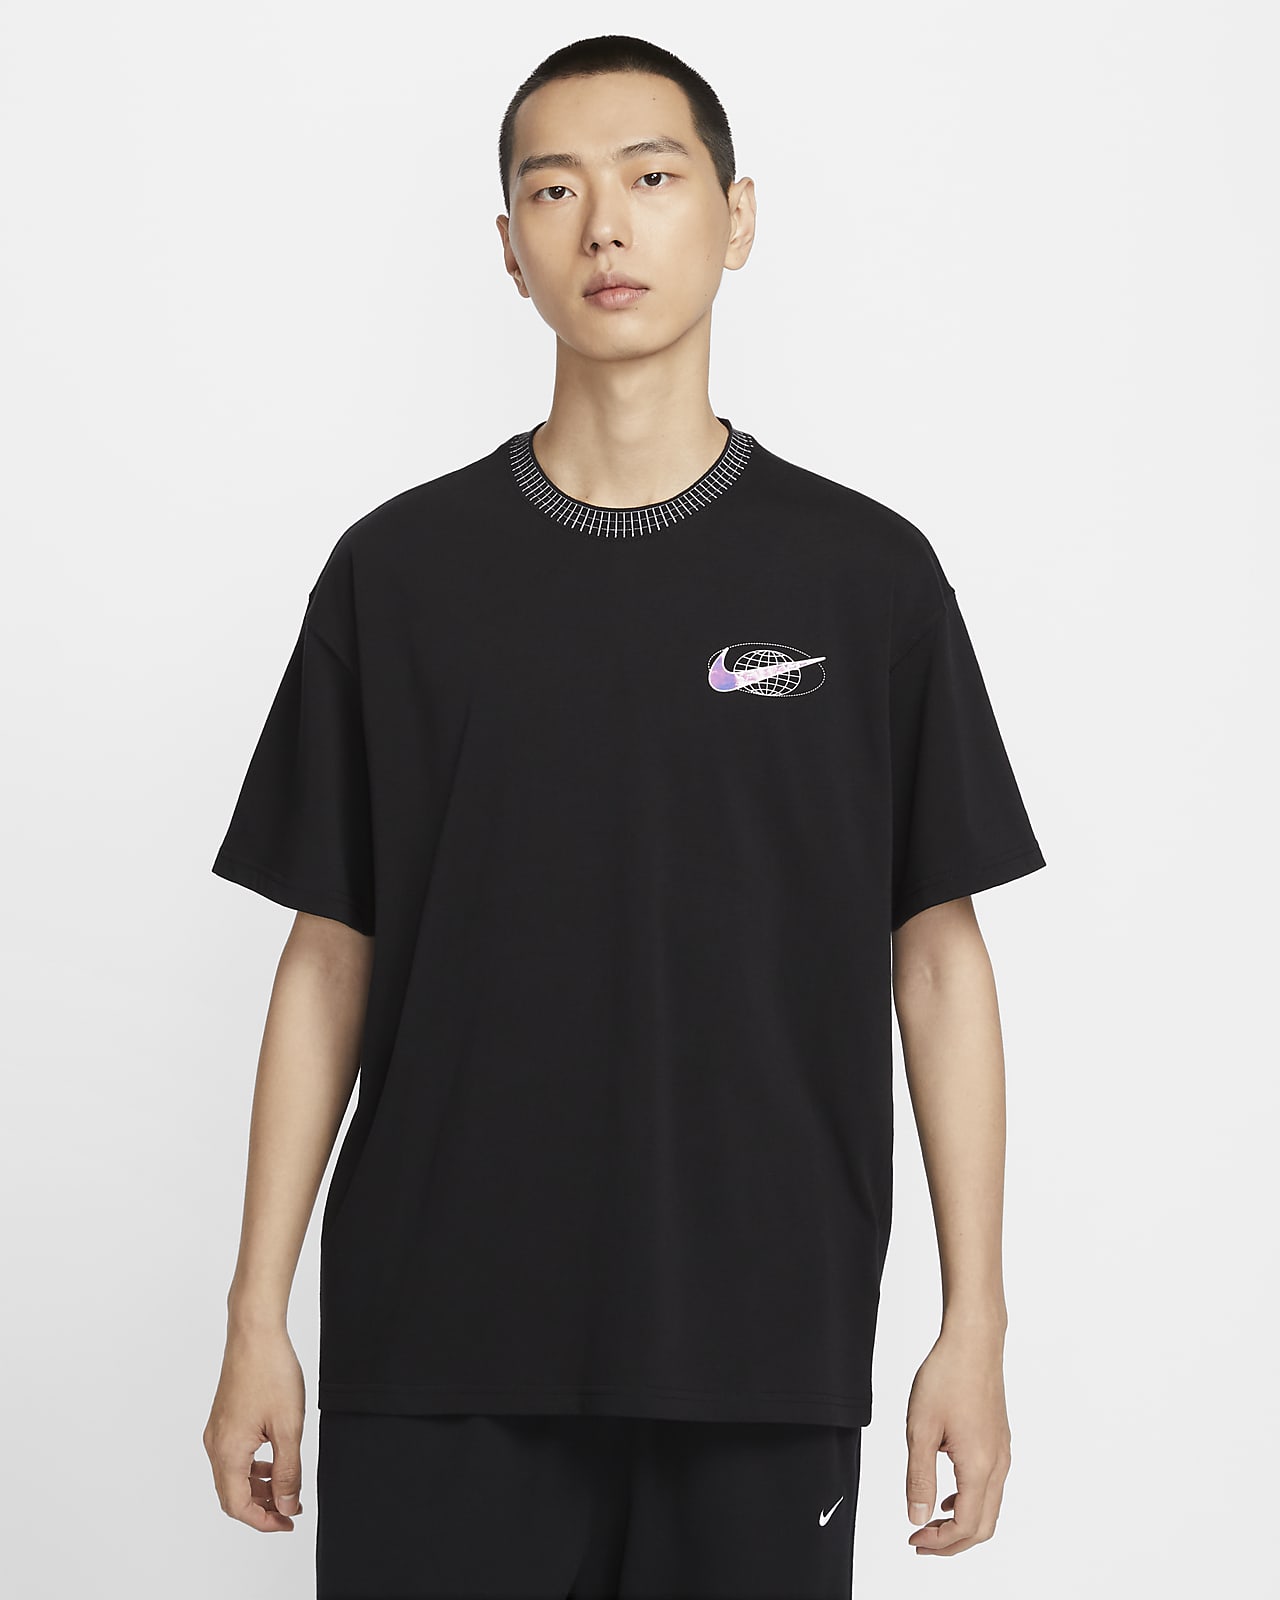 NIKE公式】ナイキ スポーツウェア メンズ マックス90 Tシャツ 